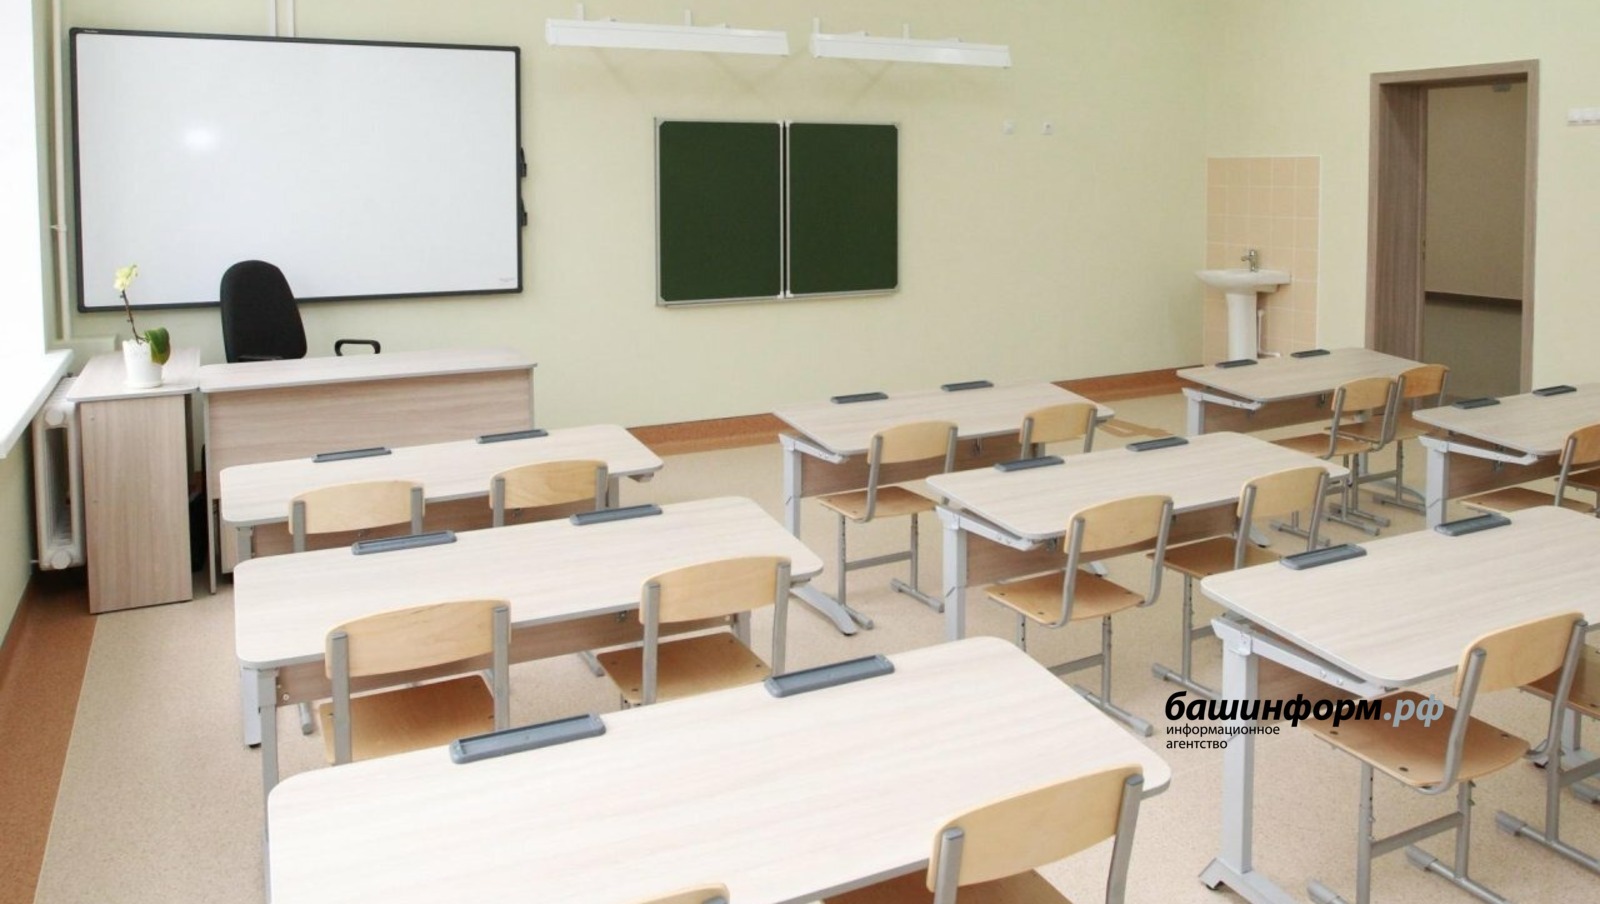 В наступившем году в Башкортостане продолжится модернизация  школьных зданий